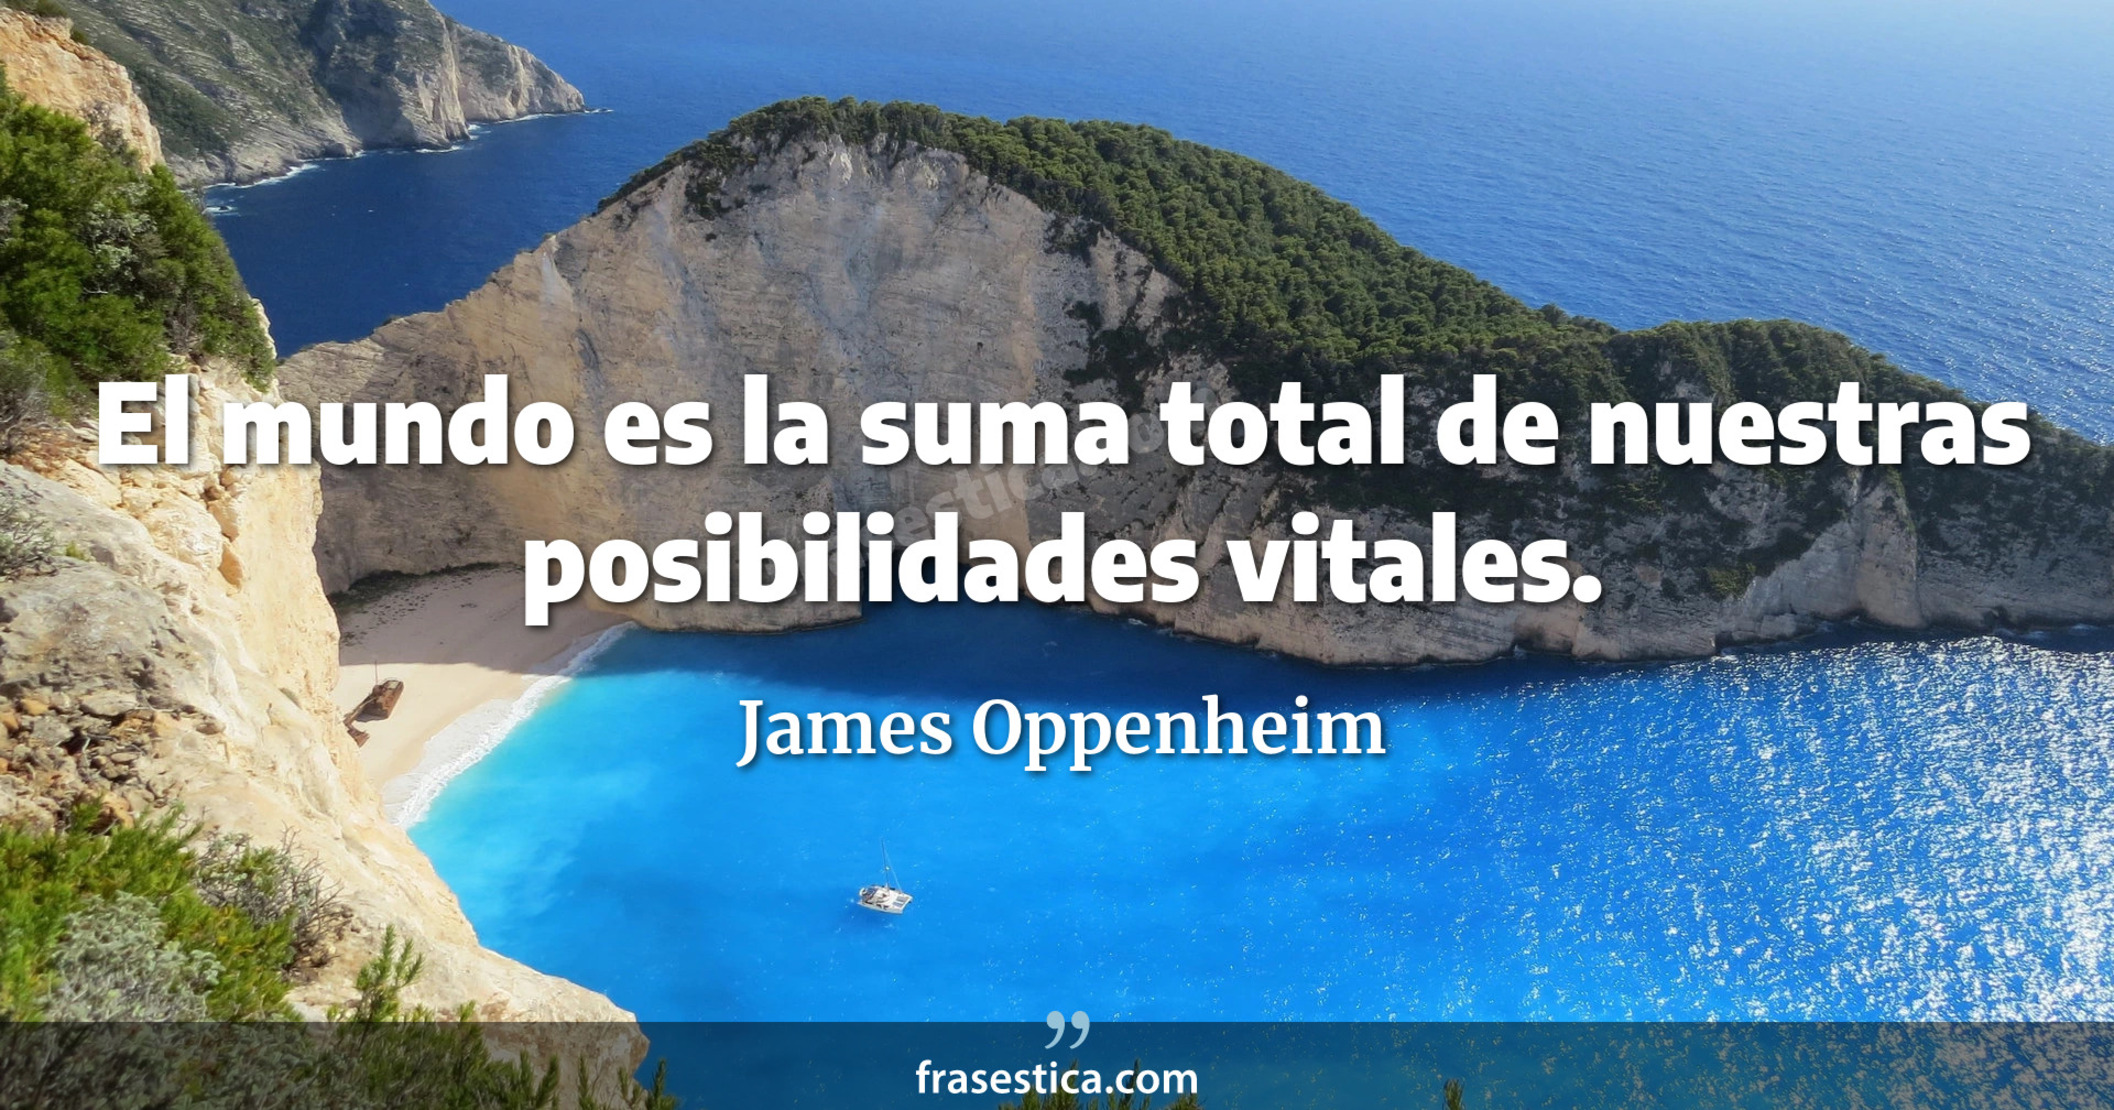 El mundo es la suma total de nuestras posibilidades vitales. - James Oppenheim